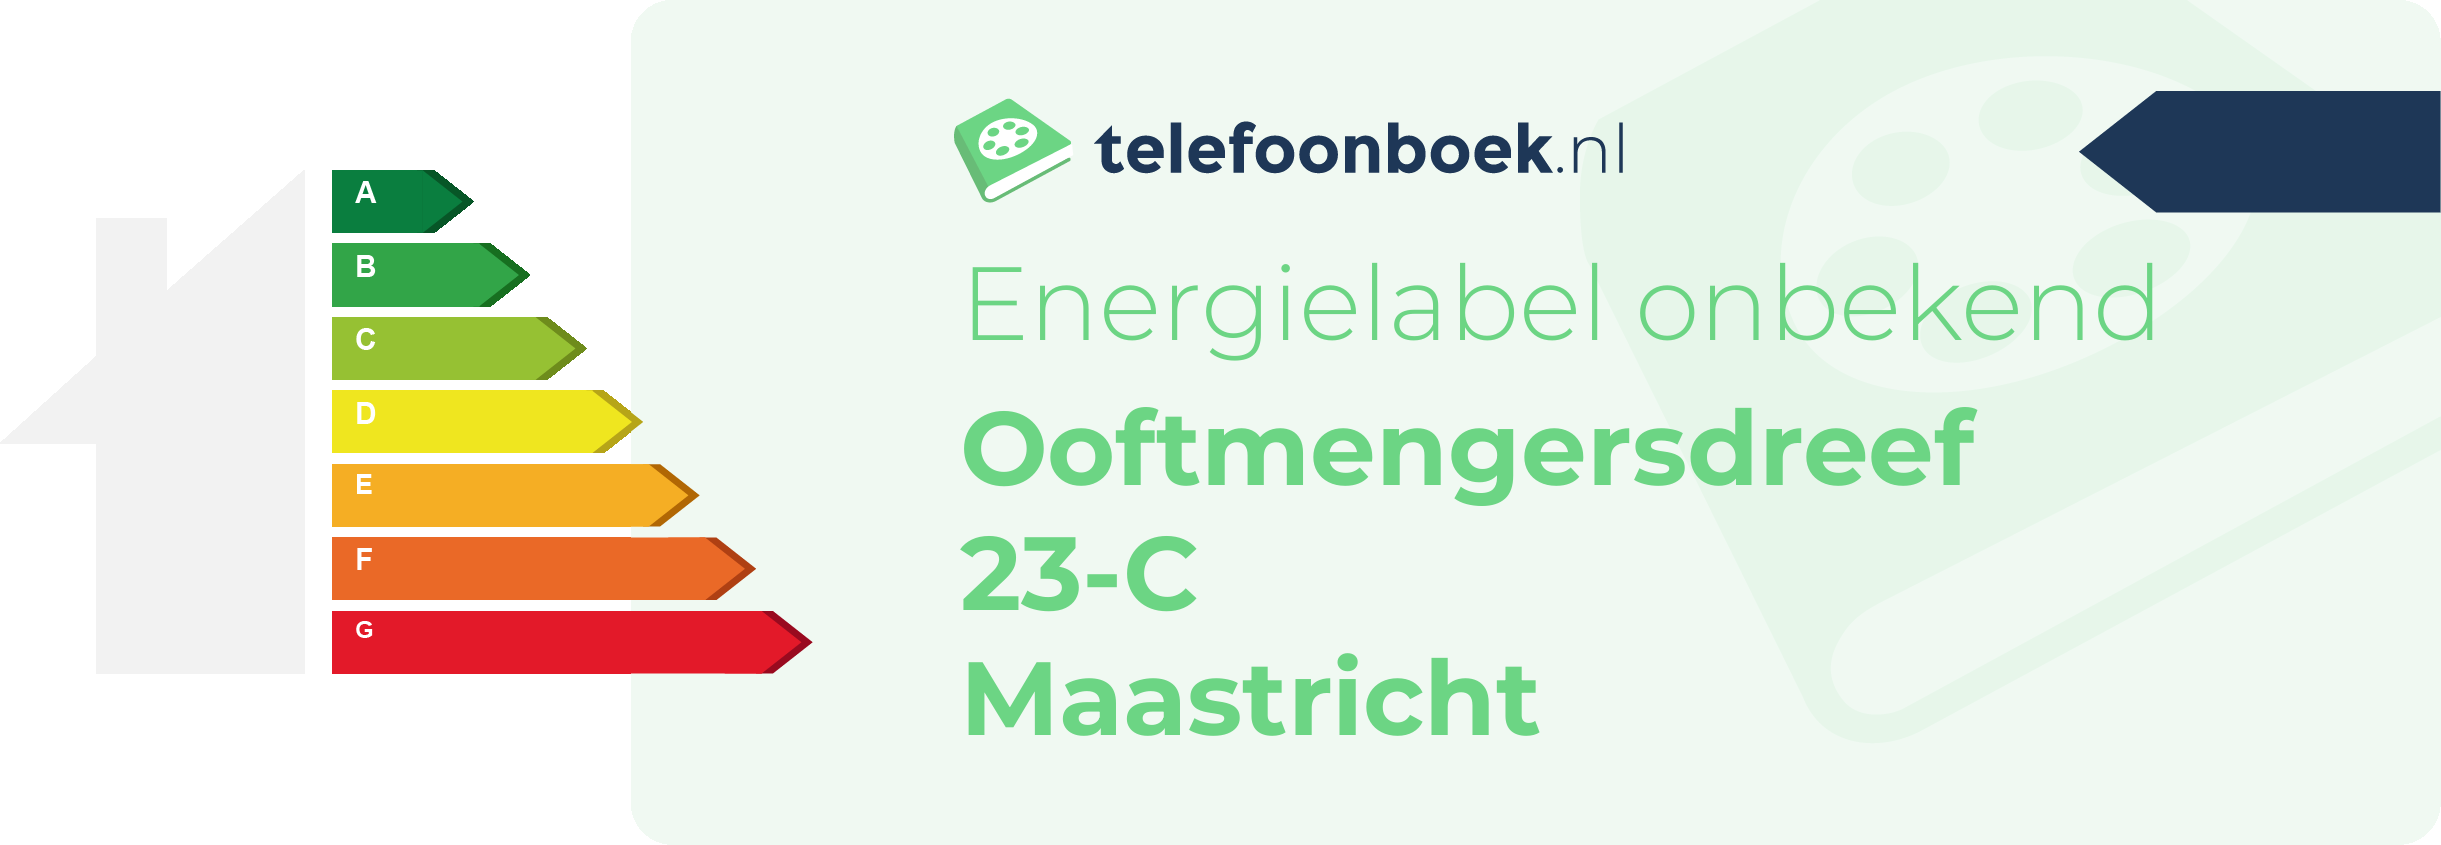 Energielabel Ooftmengersdreef 23-C Maastricht